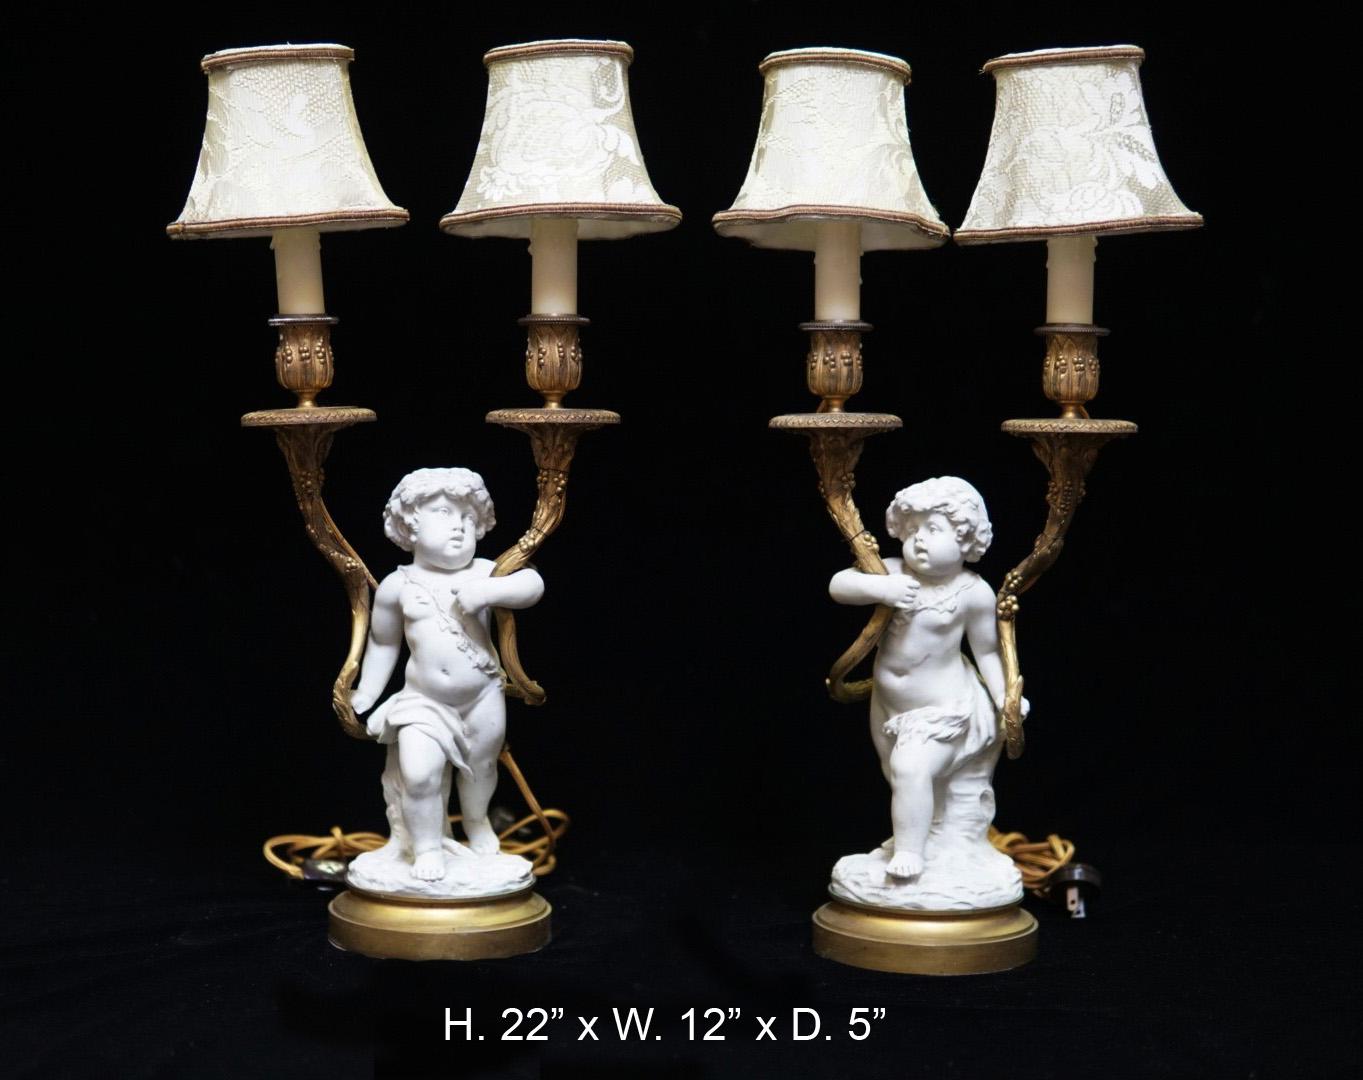 Exquisites Paar französischer weißer Biskuitfiguren im Louis-XV-Stil, auf Lampen montiert, 19
Jede Leuchte besteht aus einer stehenden Putte aus weißem Biskuit mit einem Blattkranz über der Schulter, die zwei blattförmige Kerzenarme aus vergoldeter